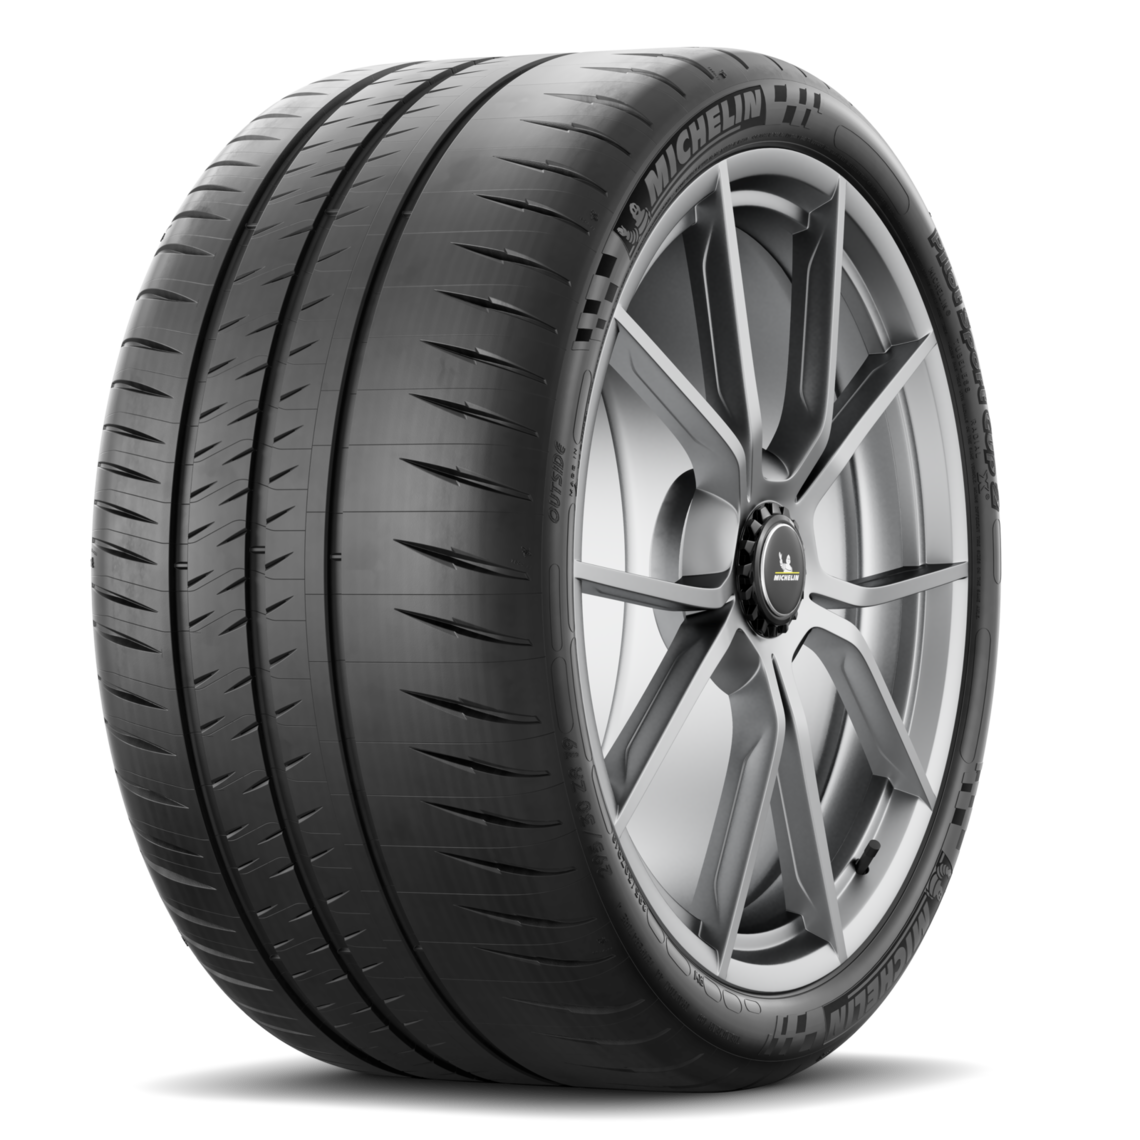 1 neumáticos de verano Michelin Pilot sportcup 2 mo1 315/30 rzr21 105y demo 30-21-8b 